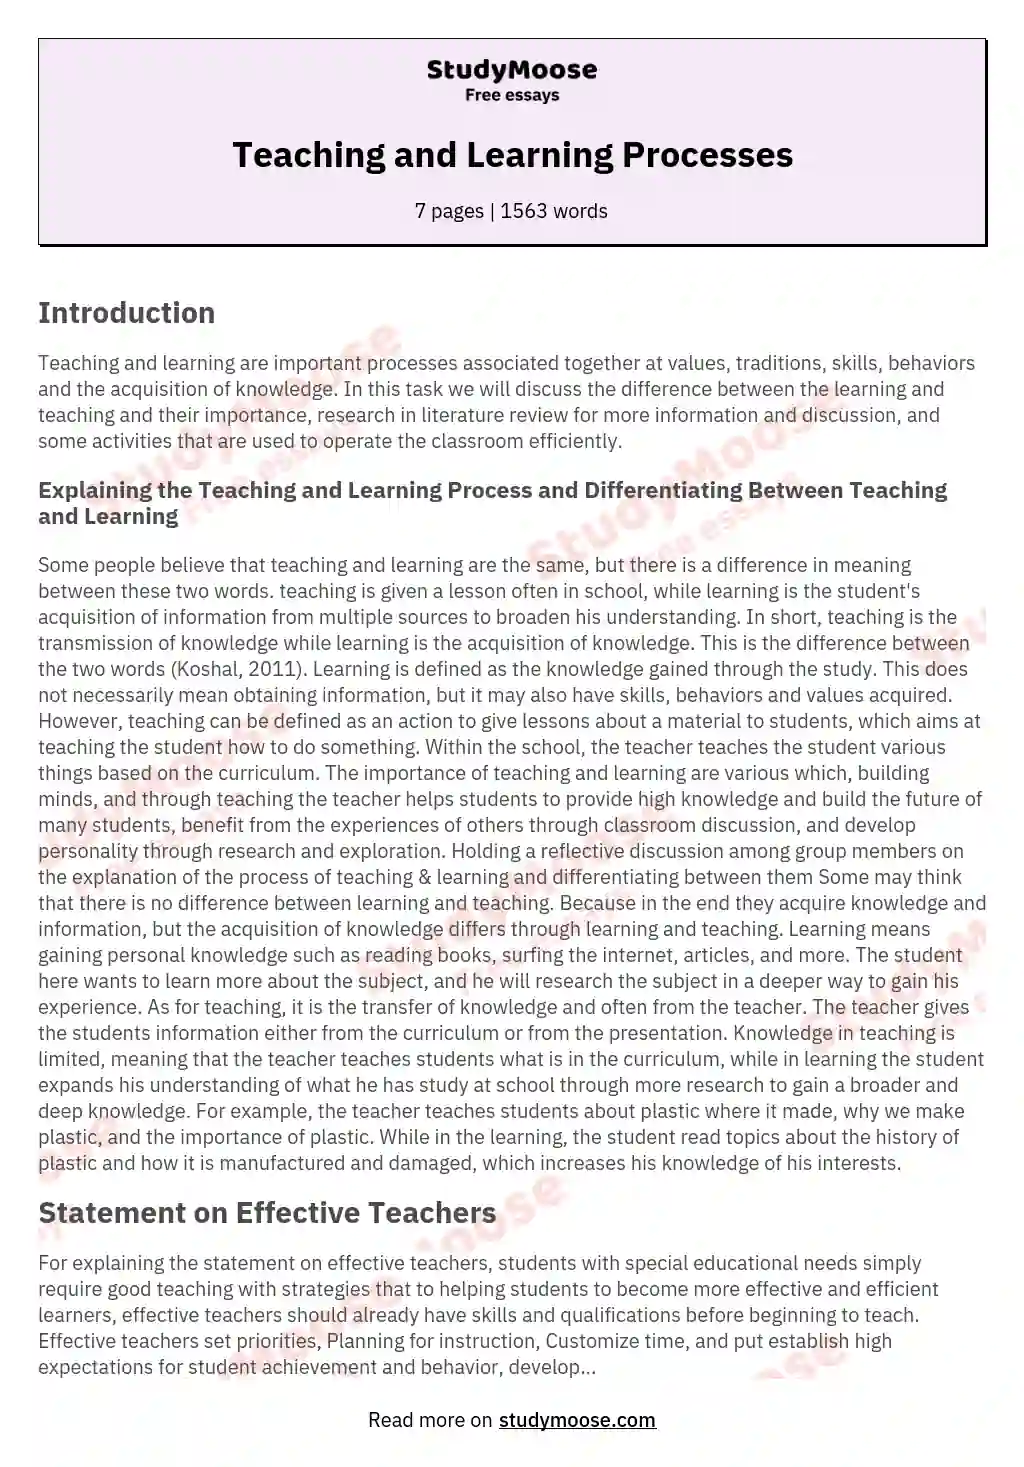 short essay on methods of teaching